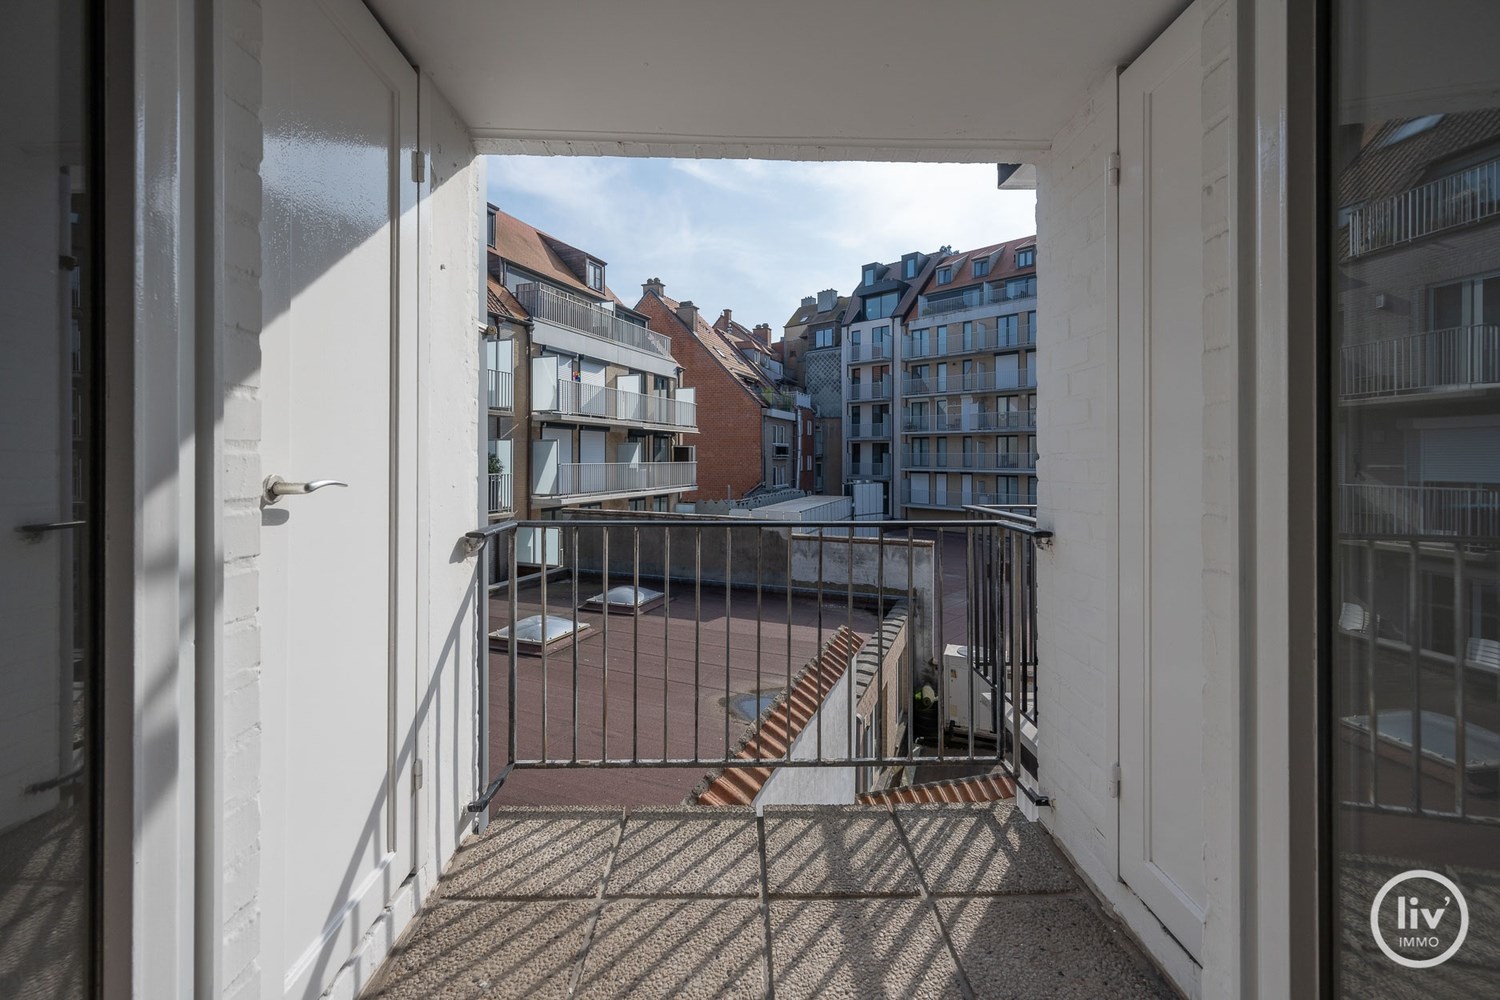 Ruim, instapklaar appartement&#160; met 3 slaapkamers zeer centraal gelegen vlakbij de winkels van de Dumortierlaan en de Lippenslaan. 